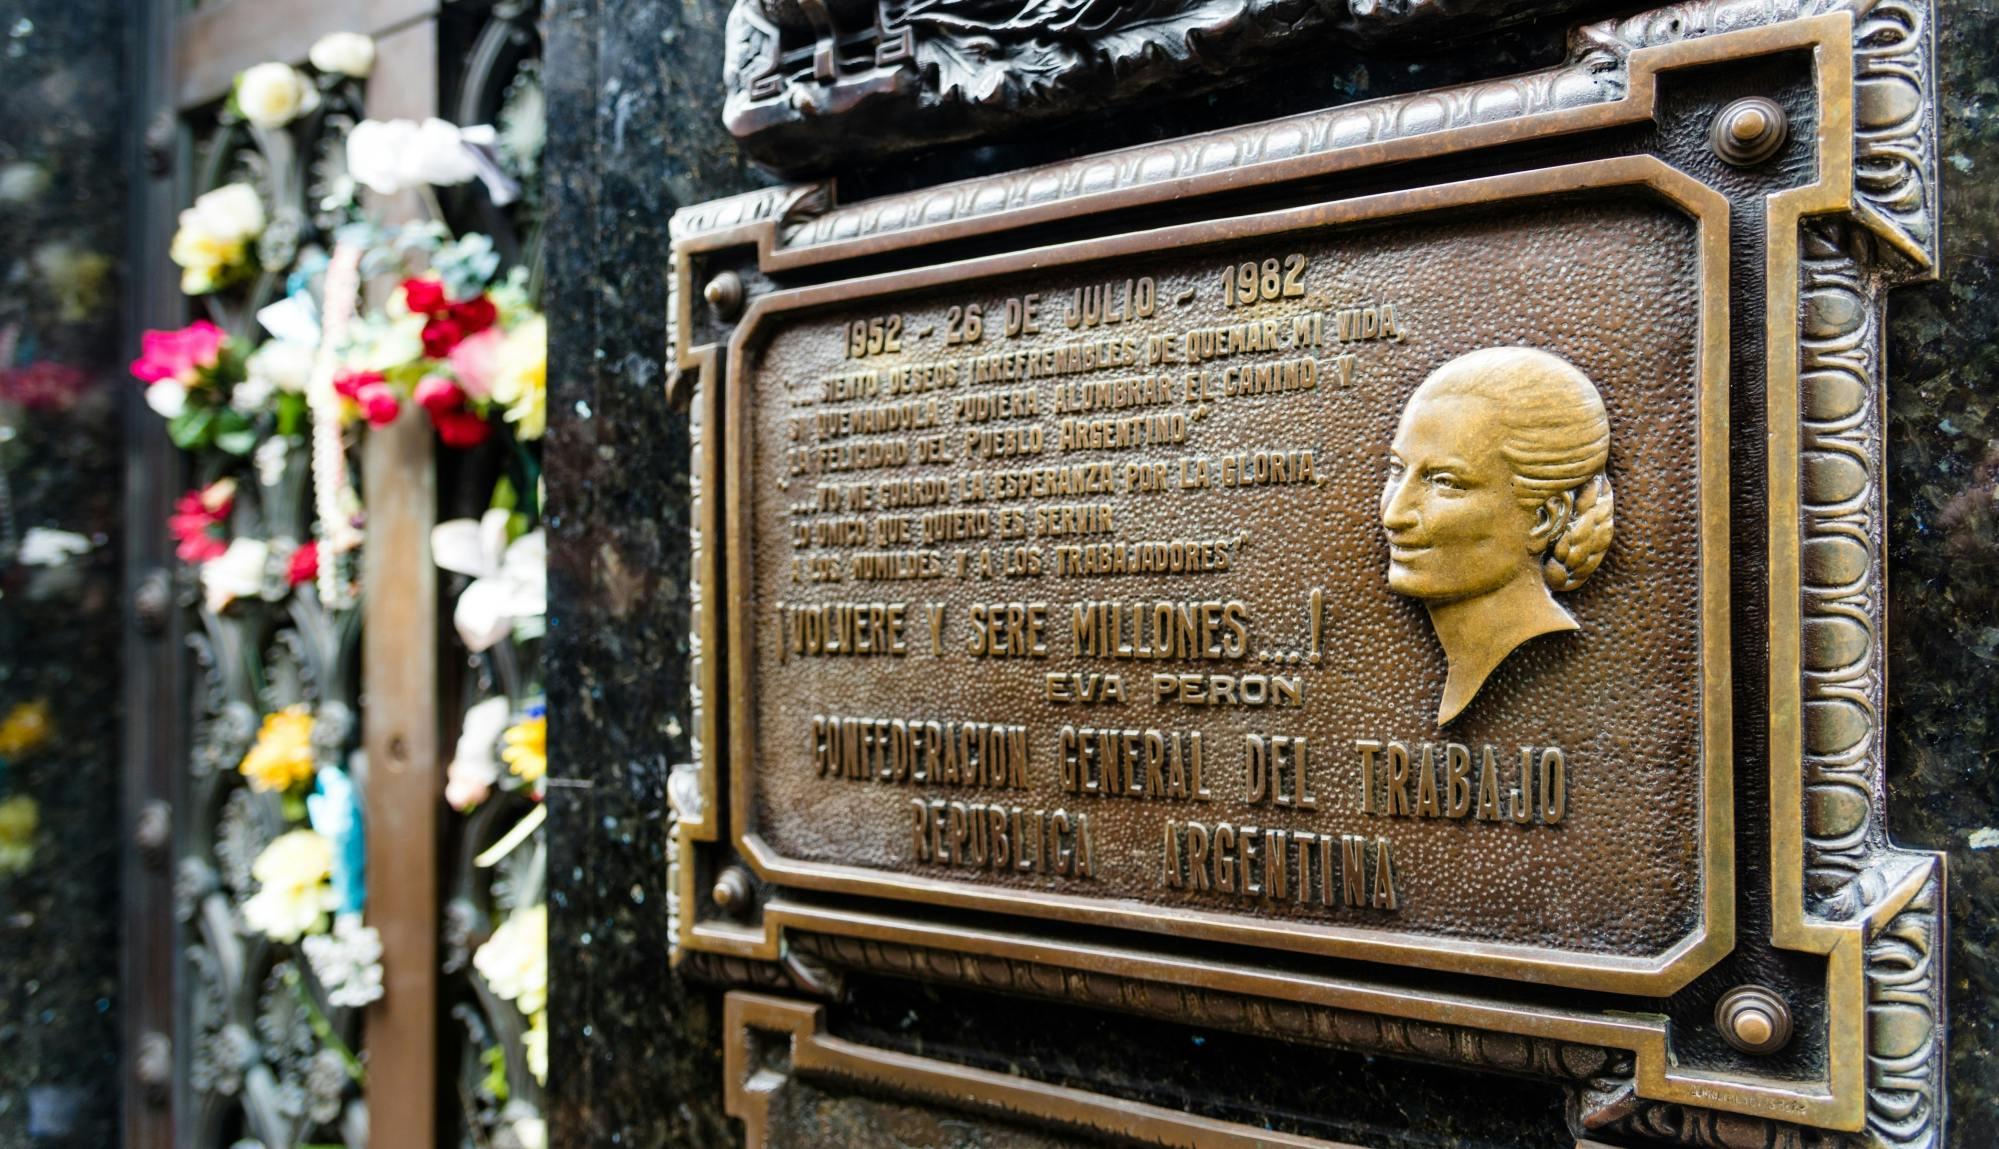 Evita e o tour privado do peronismo em Buenos Aires